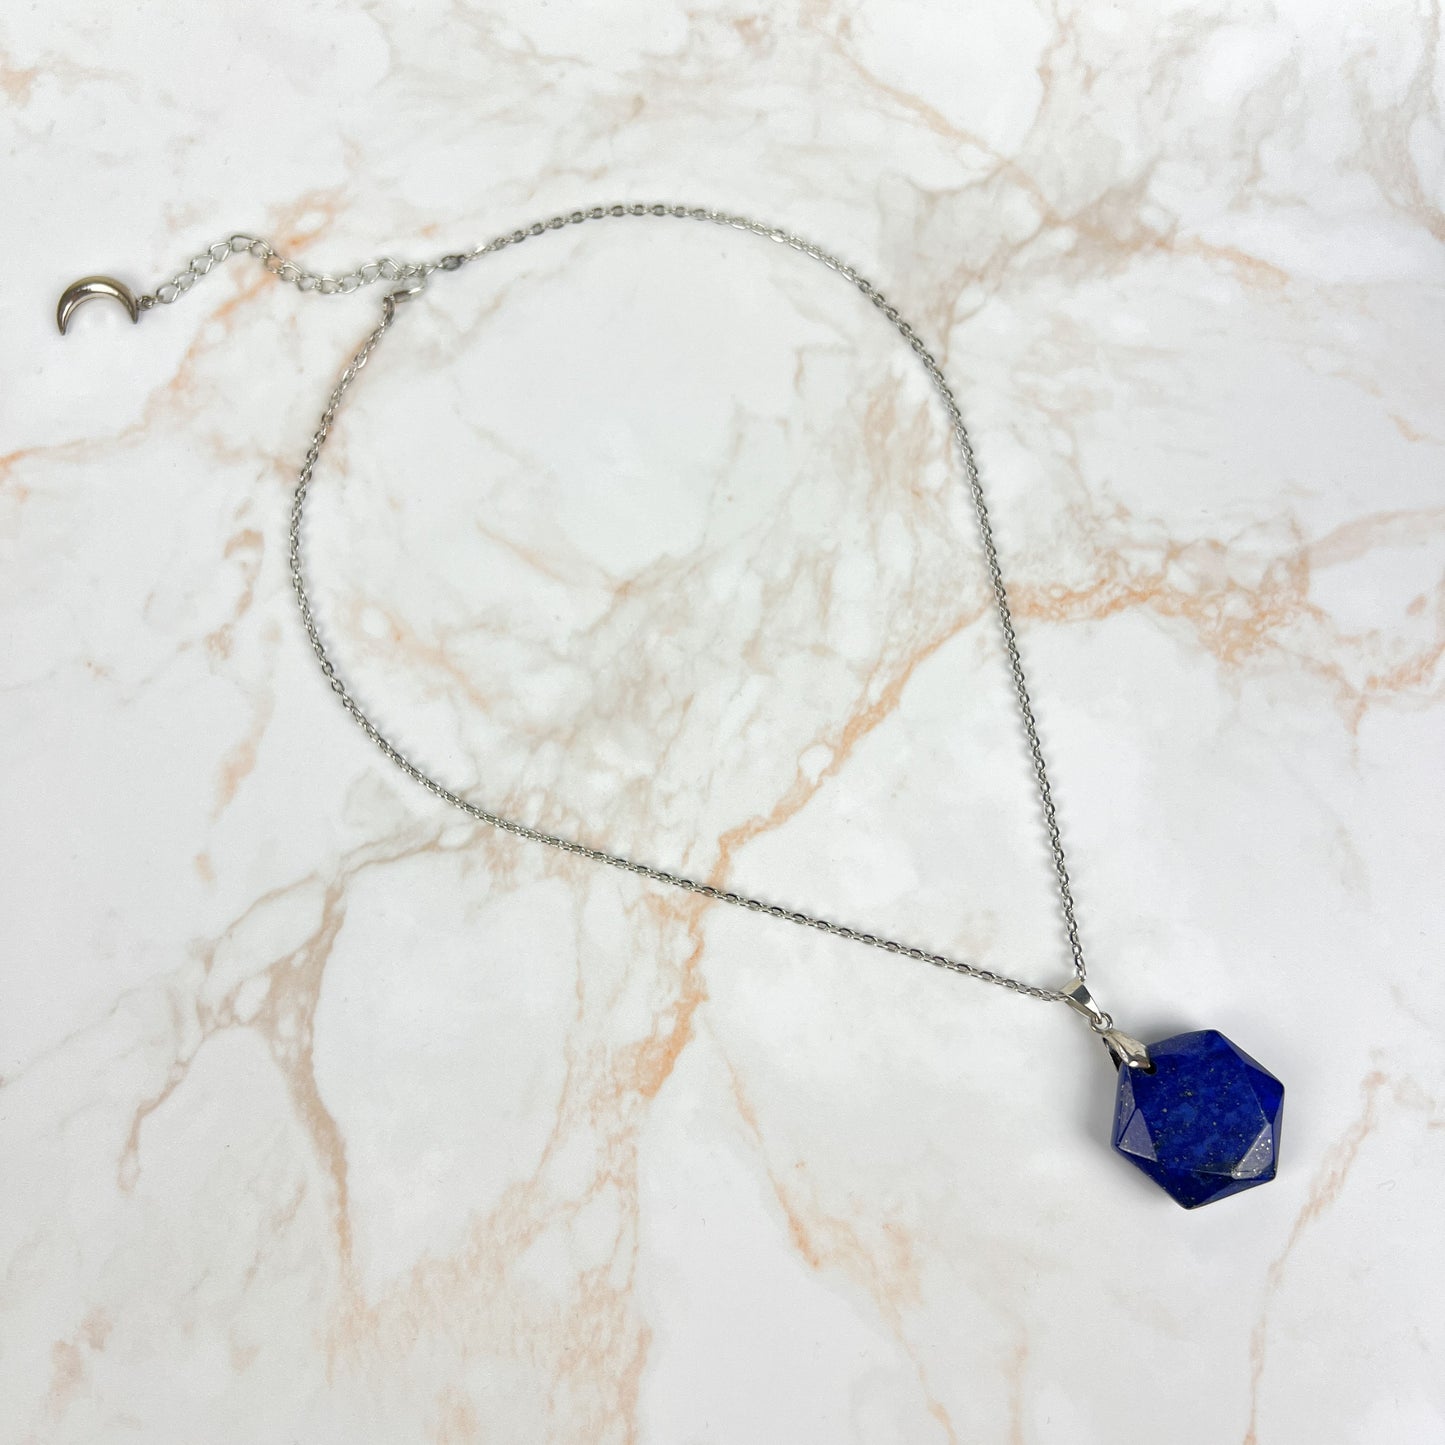 Gemstone hexagon necklace in Lapis Lazuli, Rose Quartz, Quartz, Amethyst or Labradorite Baguette Magick